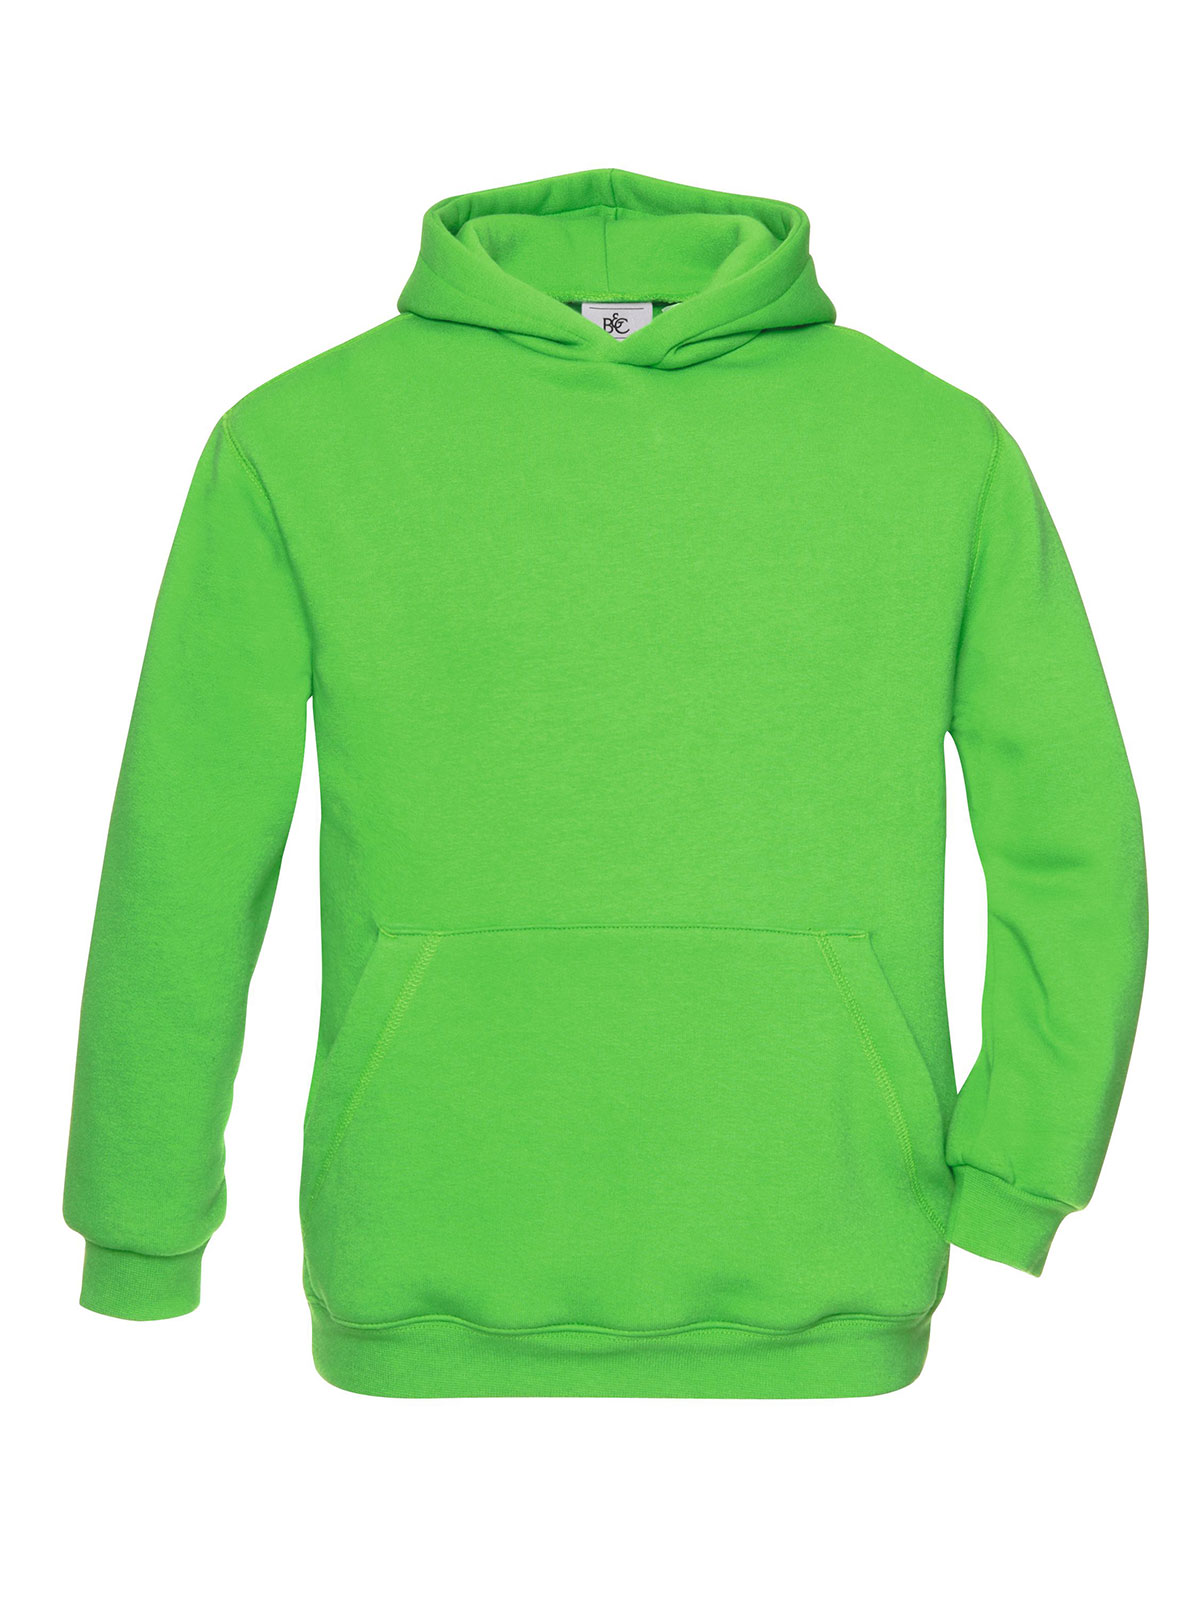 hooded-kids-real-green.webp